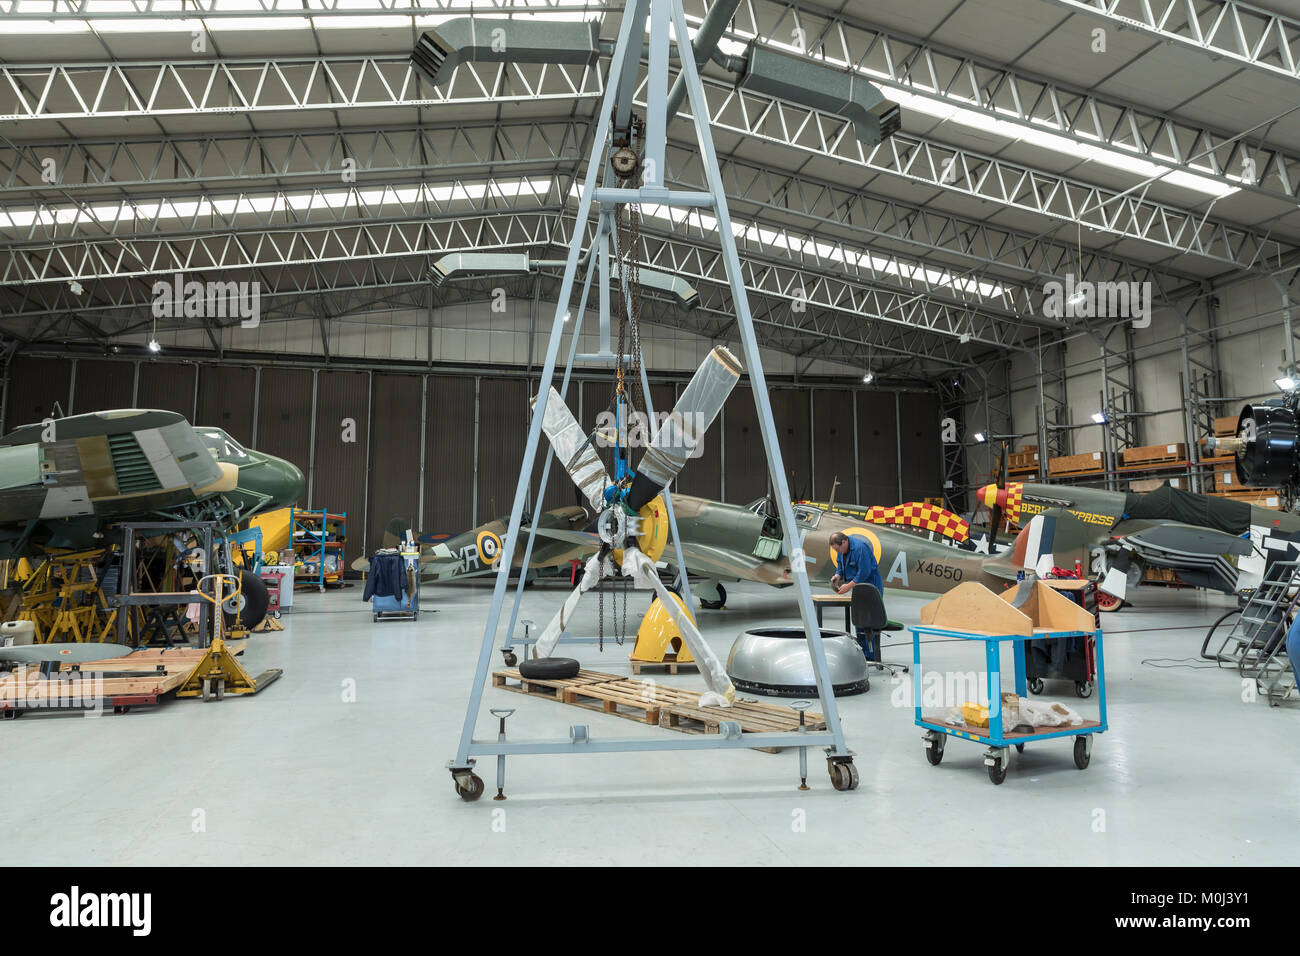 Einer der Duxford Hangars mit klassischen Warbirds auf Wartung, Reparatur und Überholung, 23. September 2017 in Duxford Cambridgeshire, Großbritannien Stockfoto